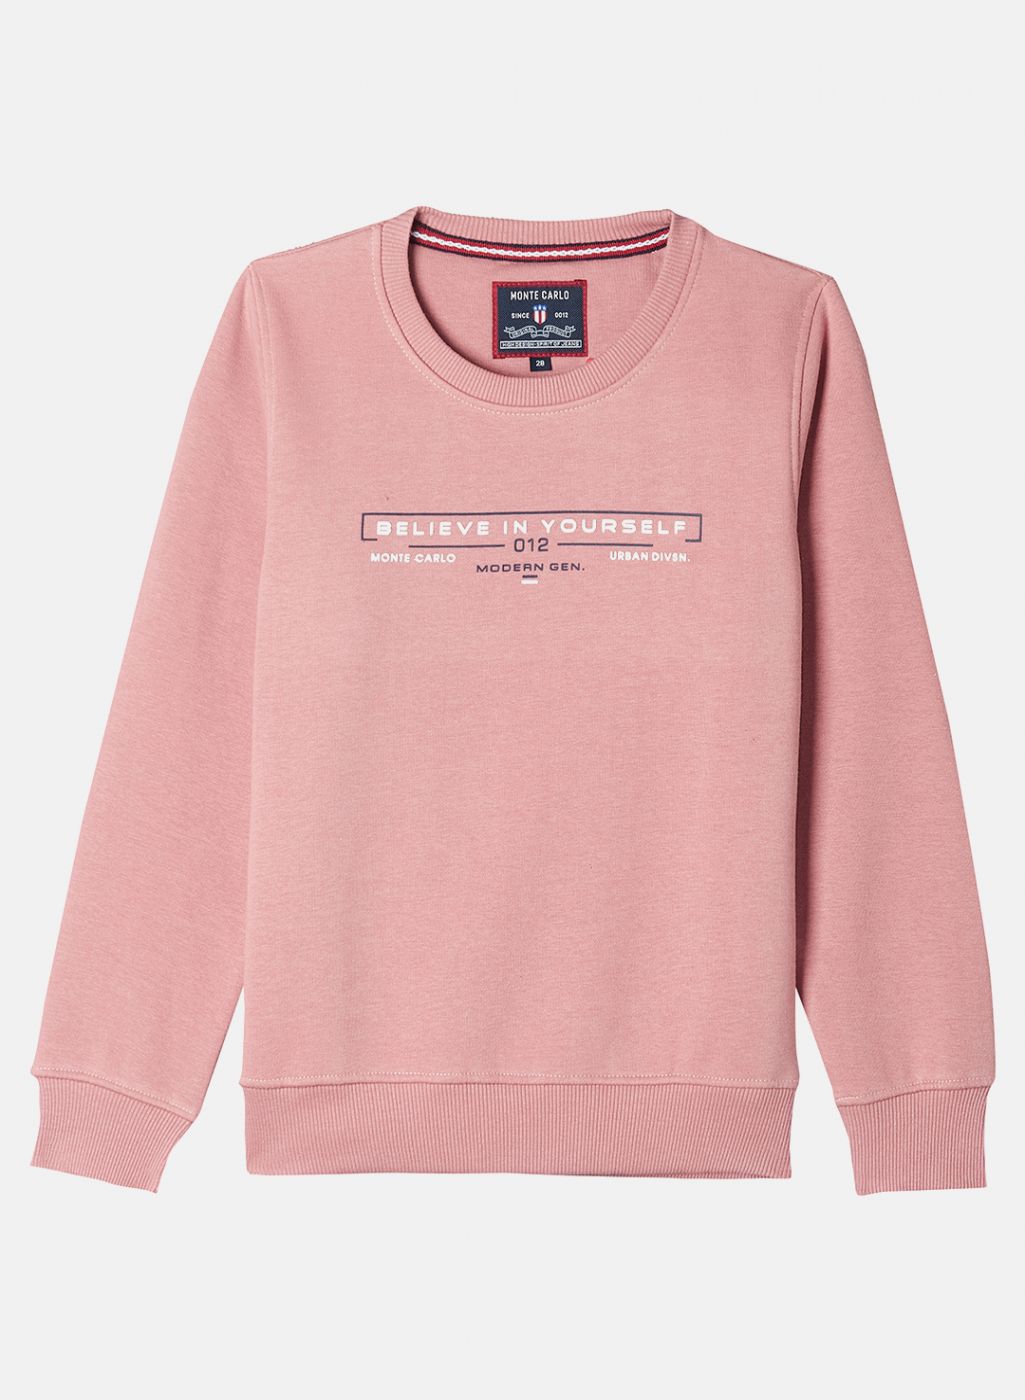 Buy Boys Pink Printed Sweatshirt Online in India - Monte Carlo